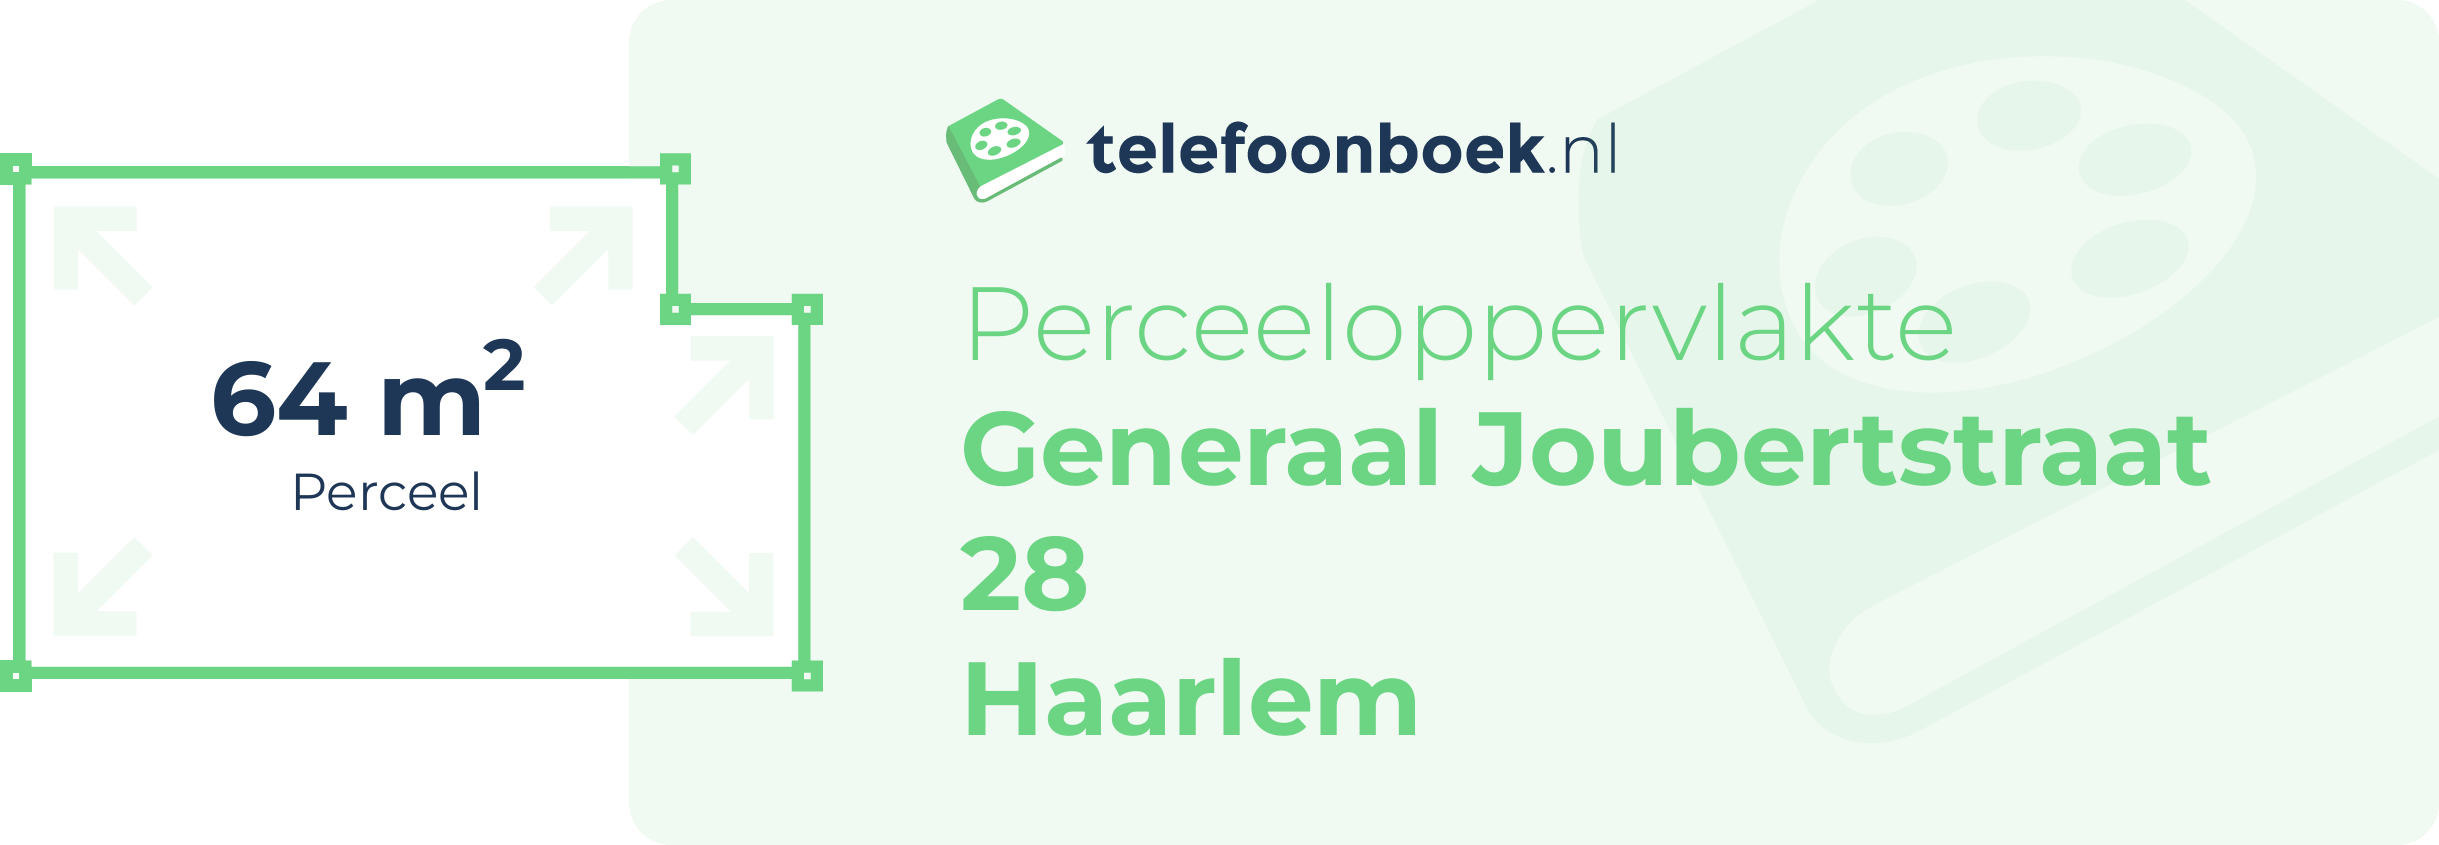 Perceeloppervlakte Generaal Joubertstraat 28 Haarlem